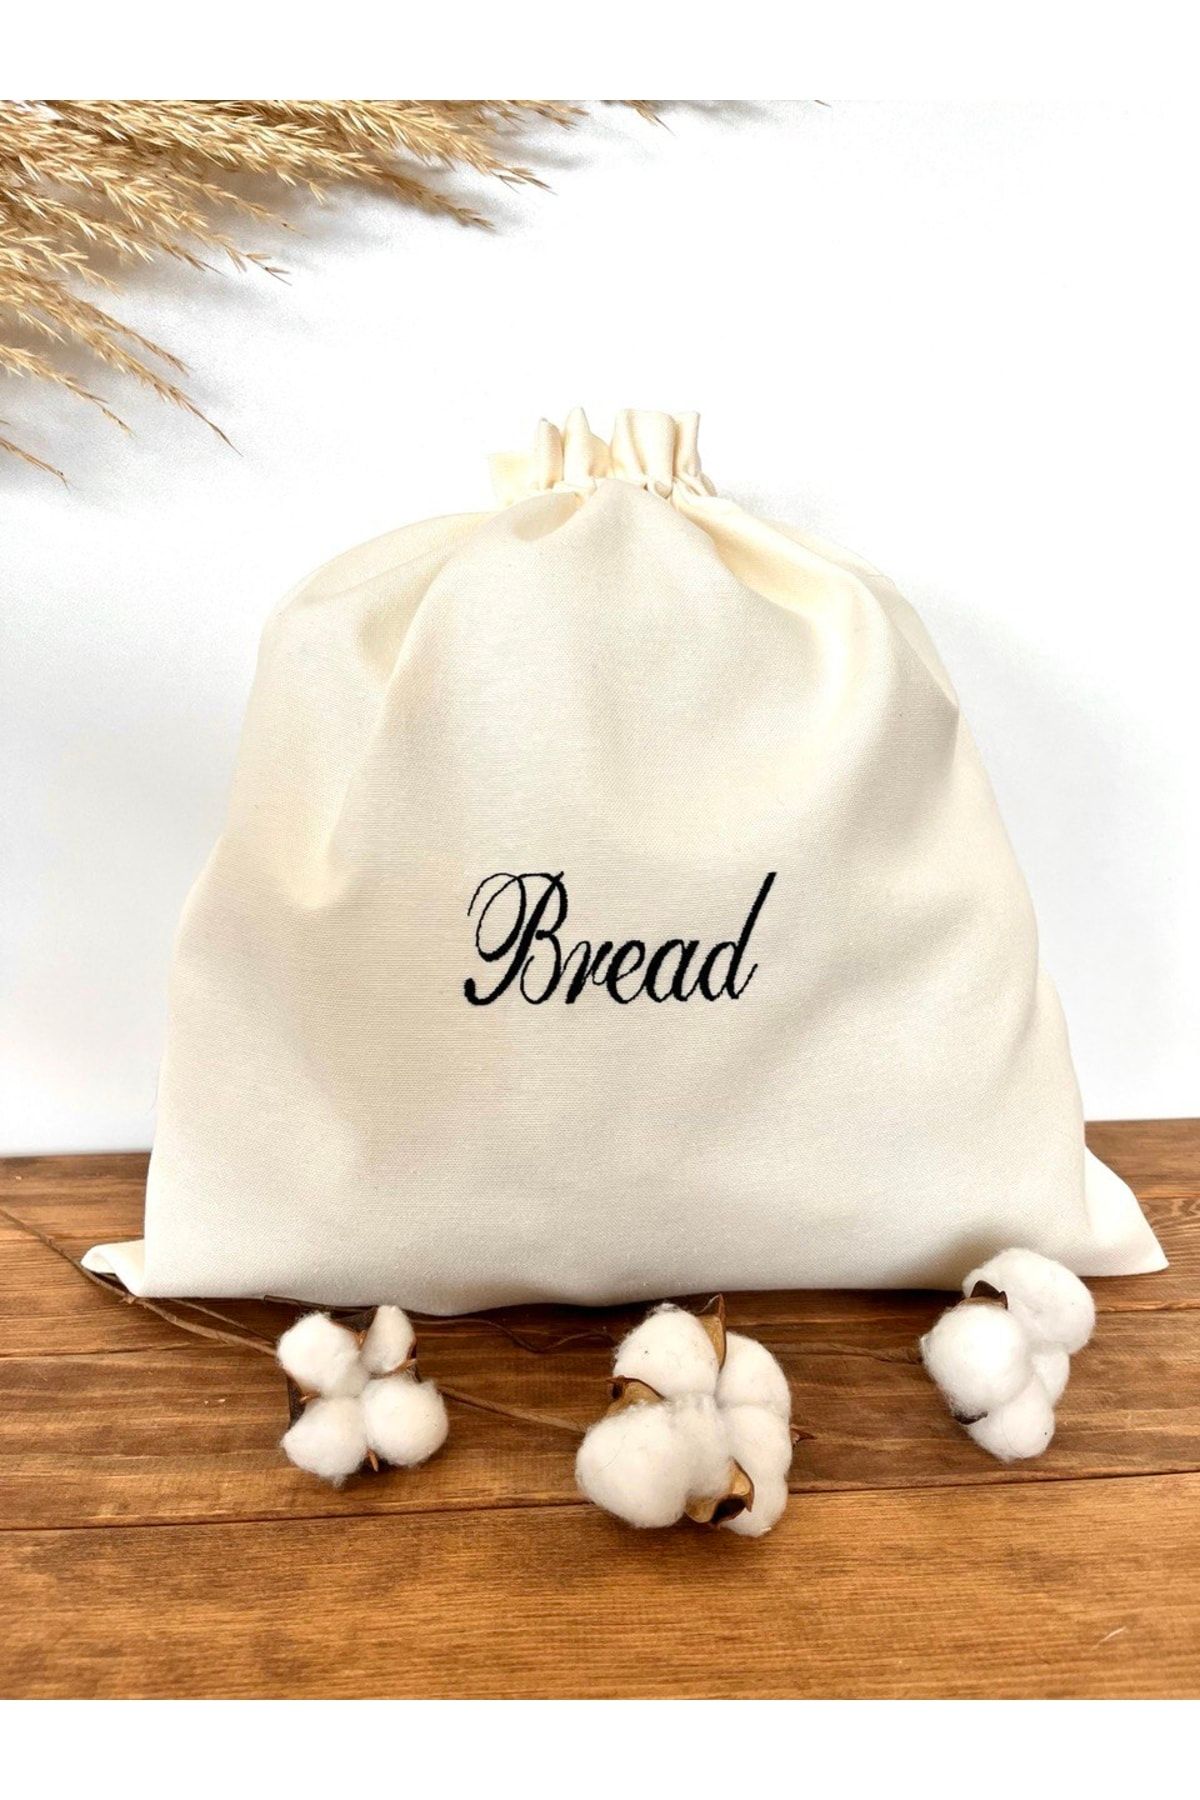 Atölye No 35 Essentials Bread Büyük Boy Ekmek Kesesi Krem El Yazısı